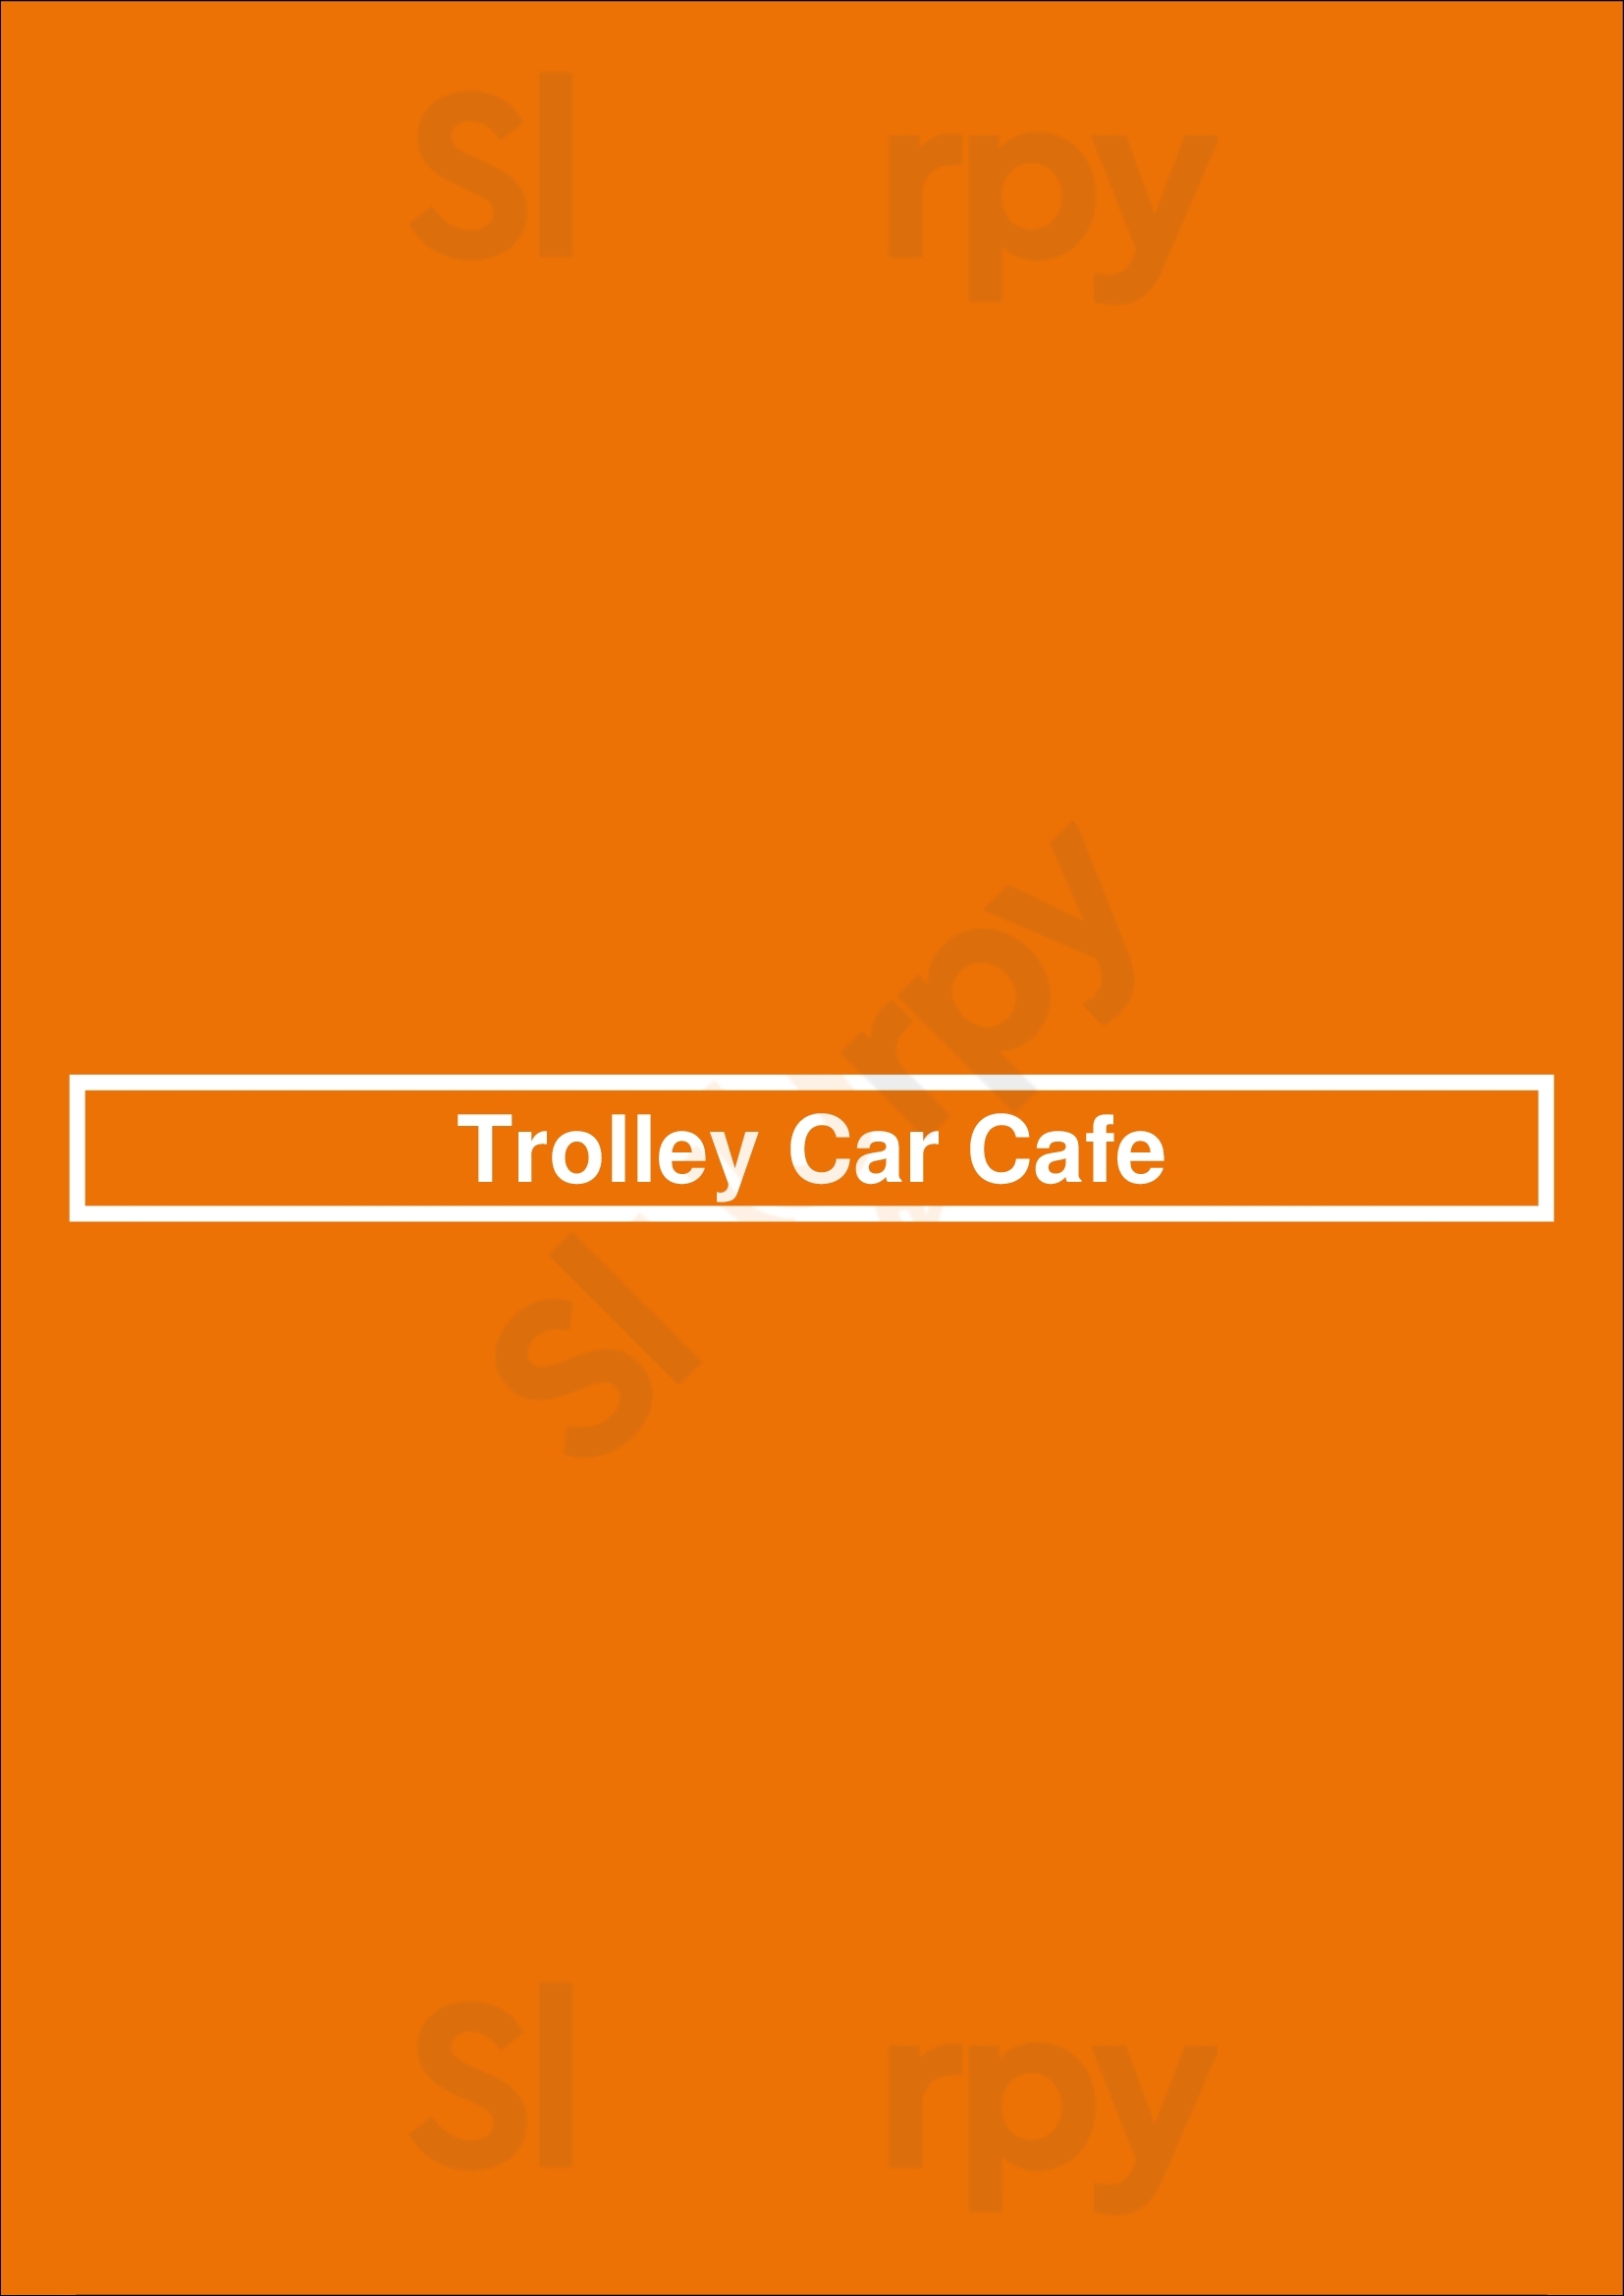 Trolley Car Cafe Philadelphia Menu - 1